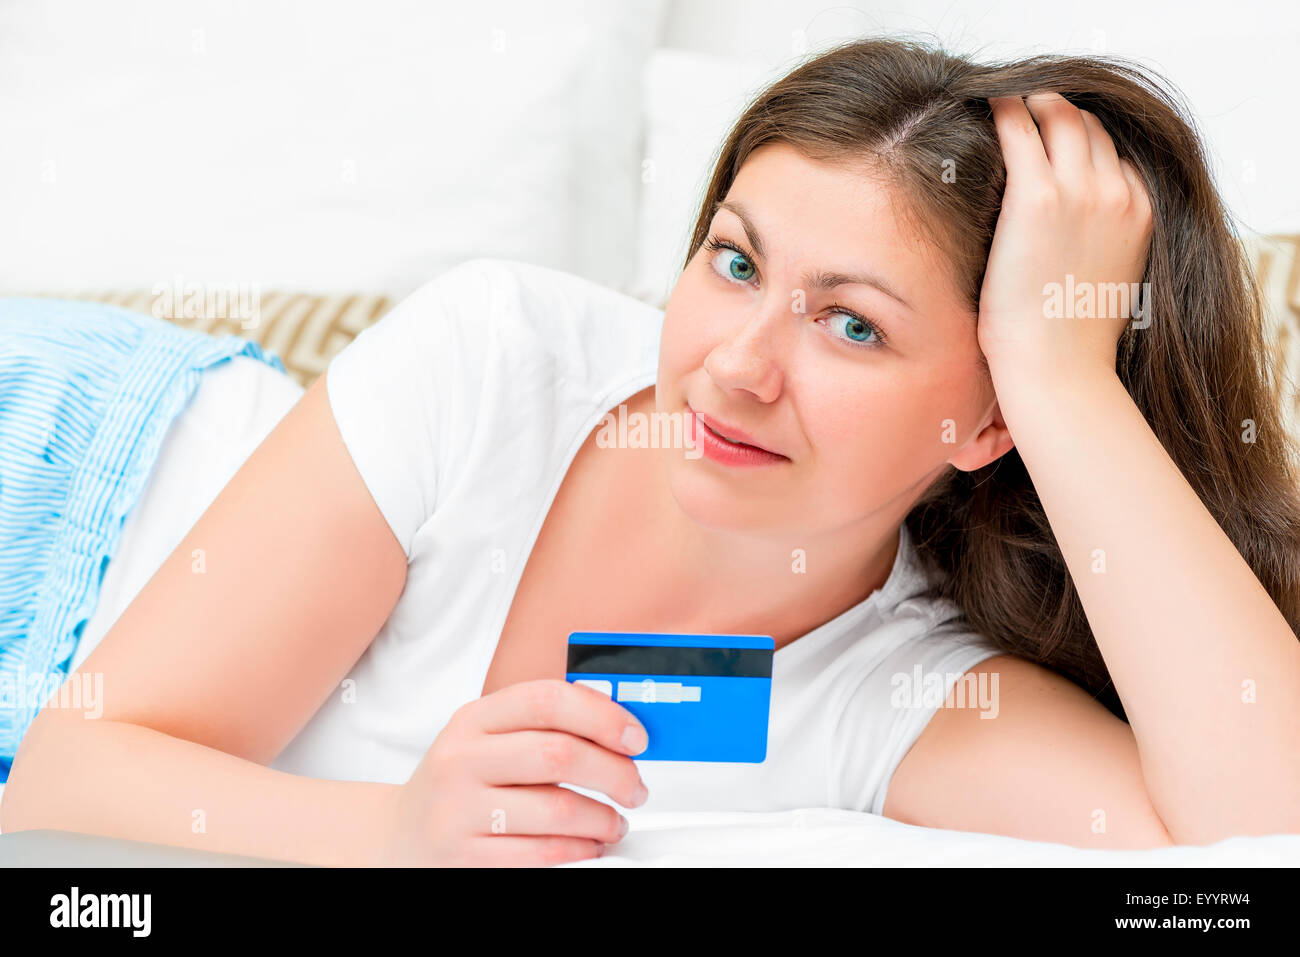 Porträt eines Mädchens mit einer Kreditkarte, die auf einem Bett liegend Stockfoto